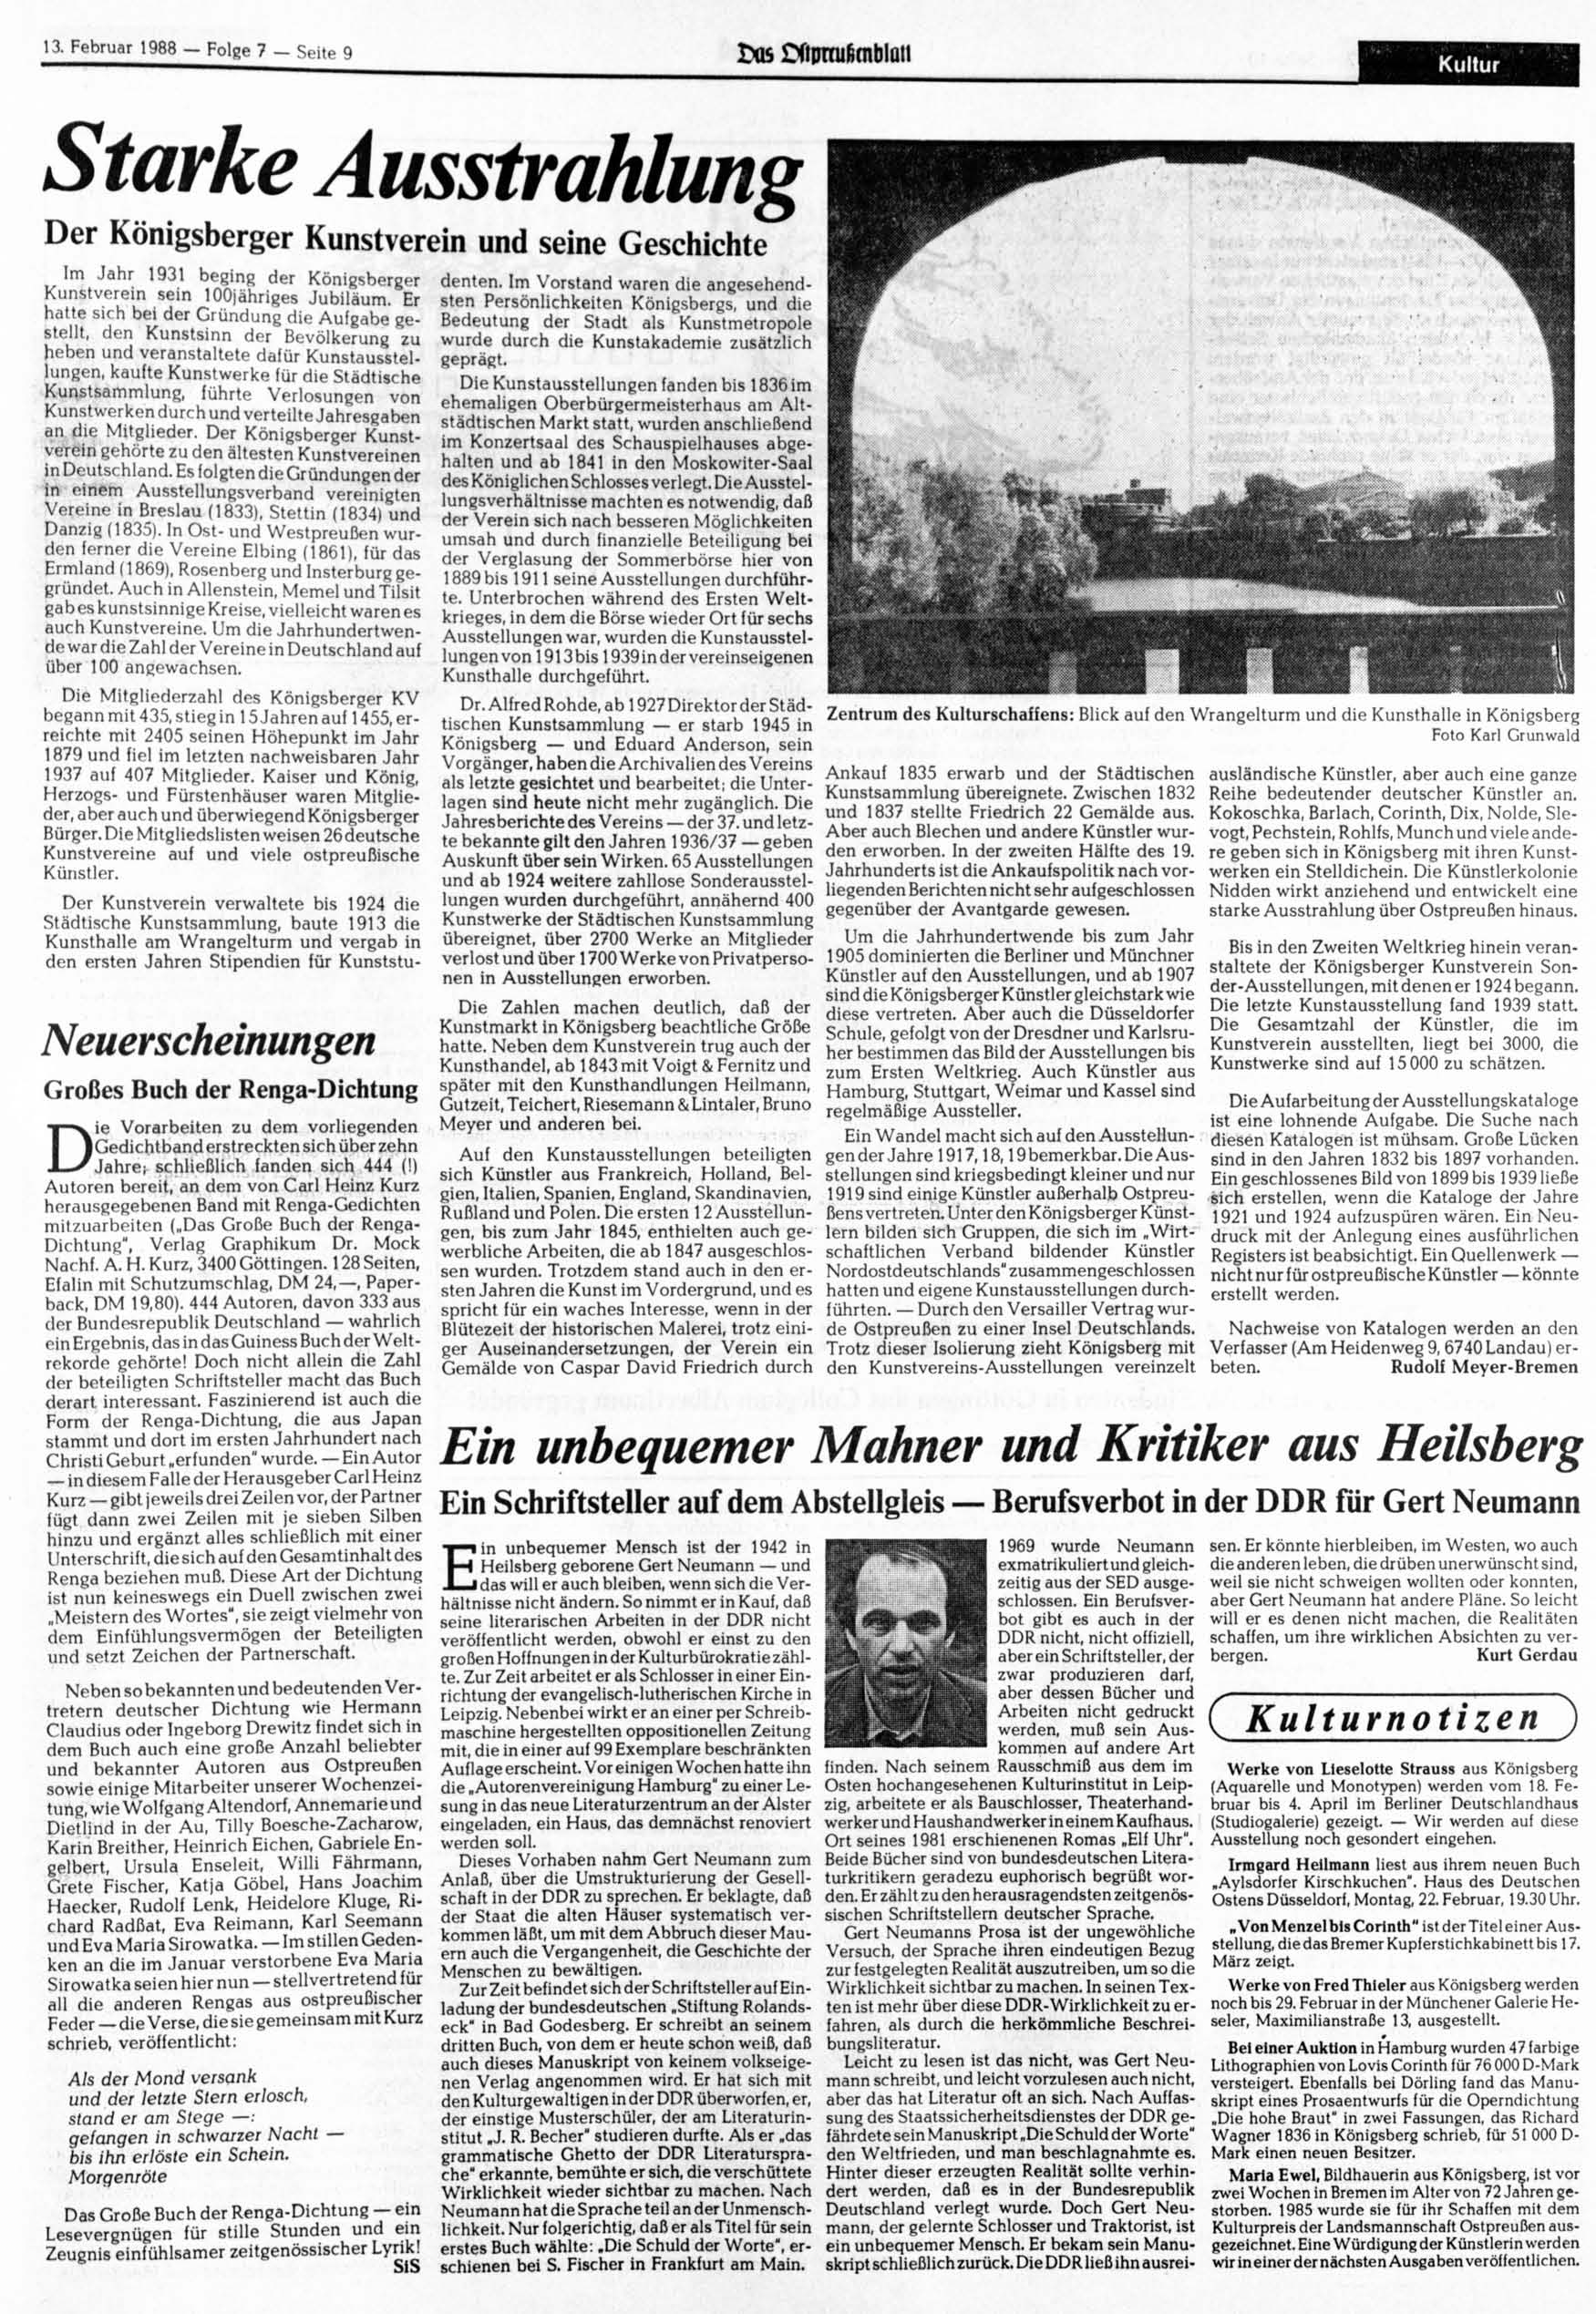 13. Februar 1988 Folge 7 Seite 9 Ixis IXtumifimblütl Starke Ausstrahlung Der Königsberger Kunstverein und seine Geschichte Im Jahr 1931 beging der Königsberger Kunstverein sein loojähriges Jubiläum.